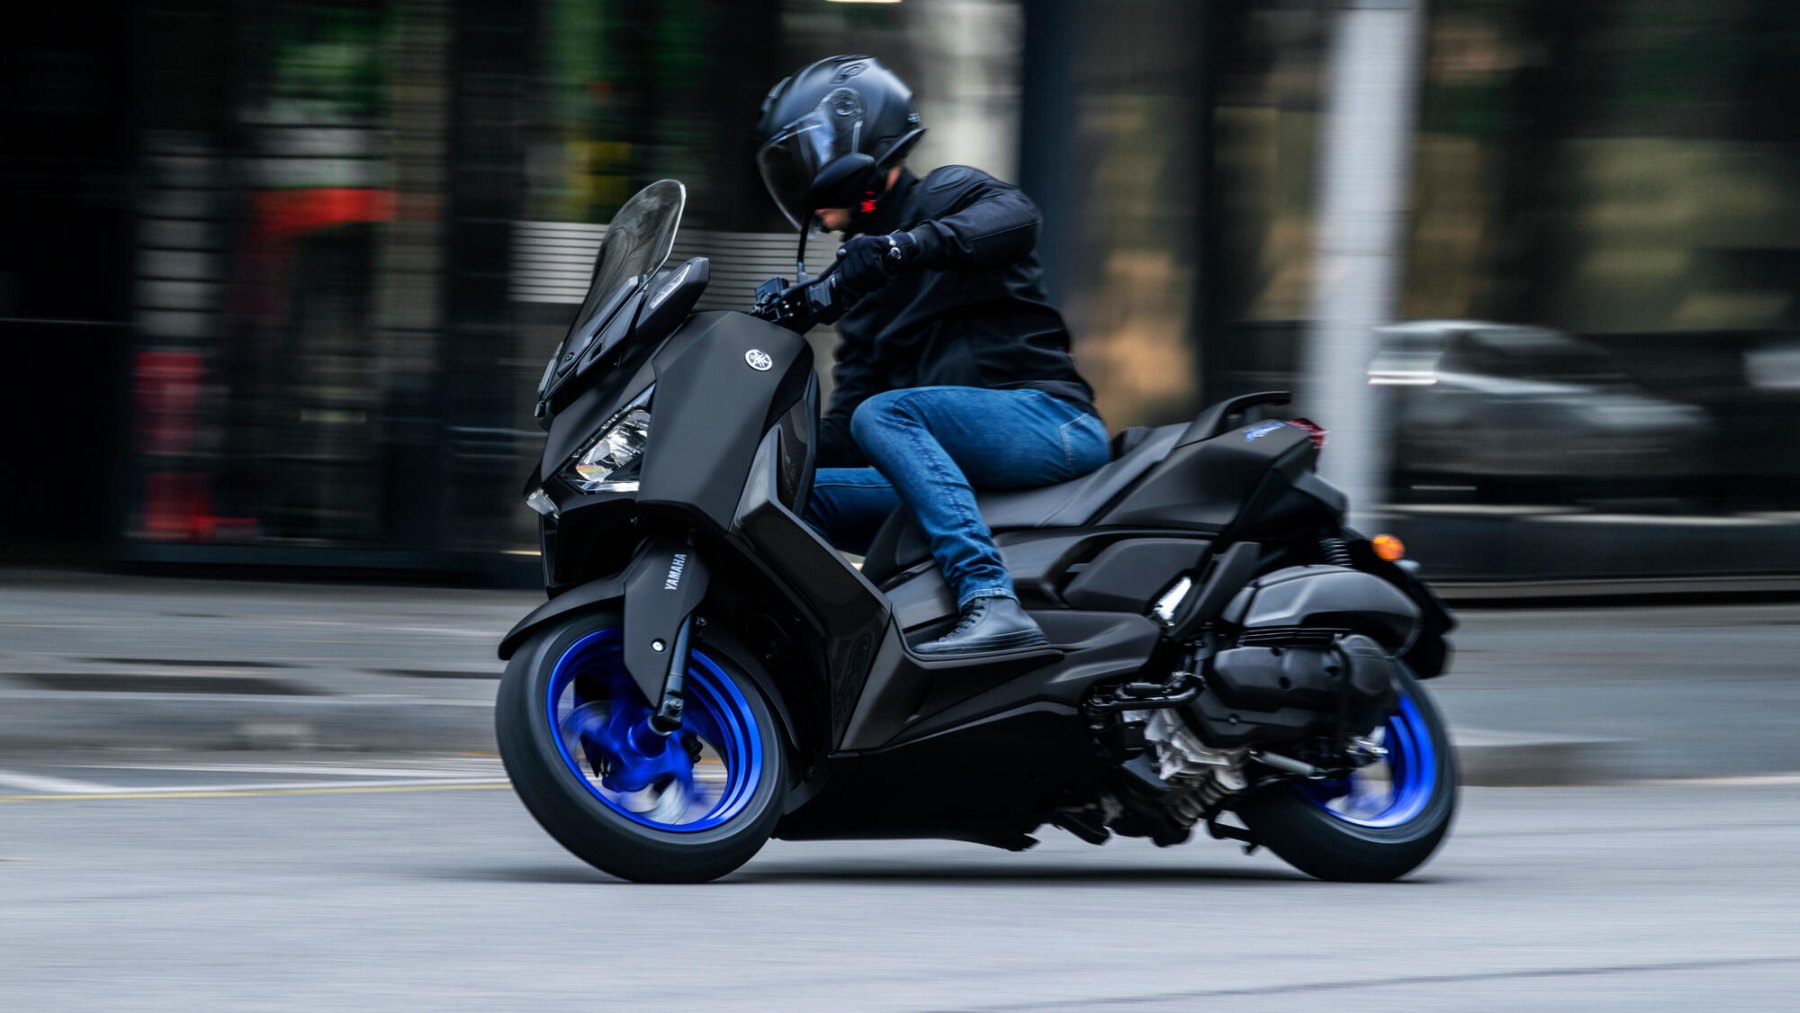 Vista en acción del Yamaha X-Max 125cc, destacando su agilidad en entorno urbano.